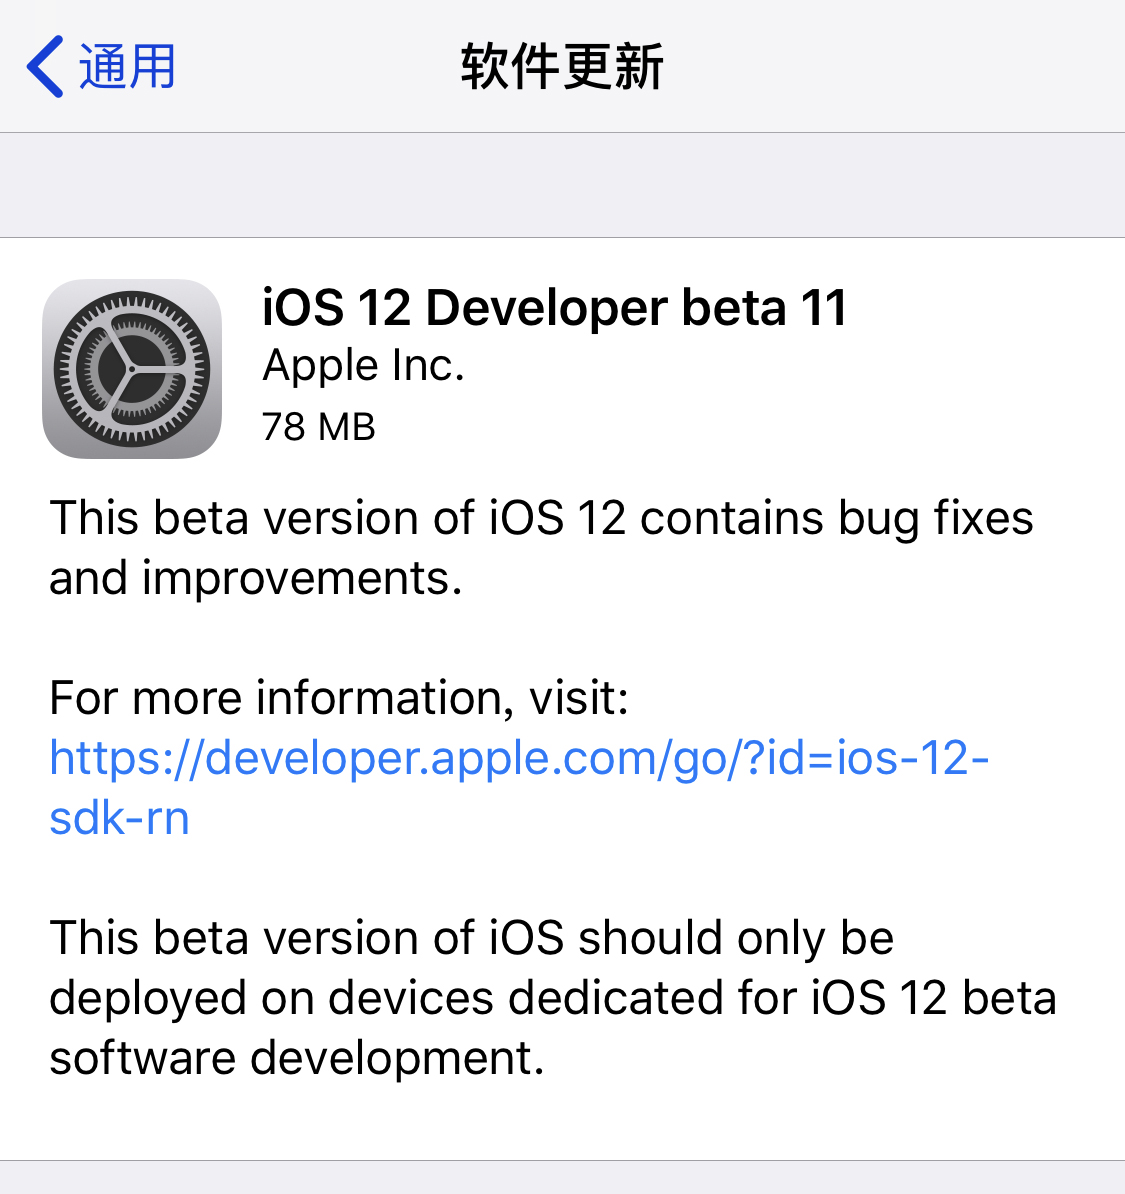 苹果推送 iOS 12 的第十一个开发者 beta 测试版